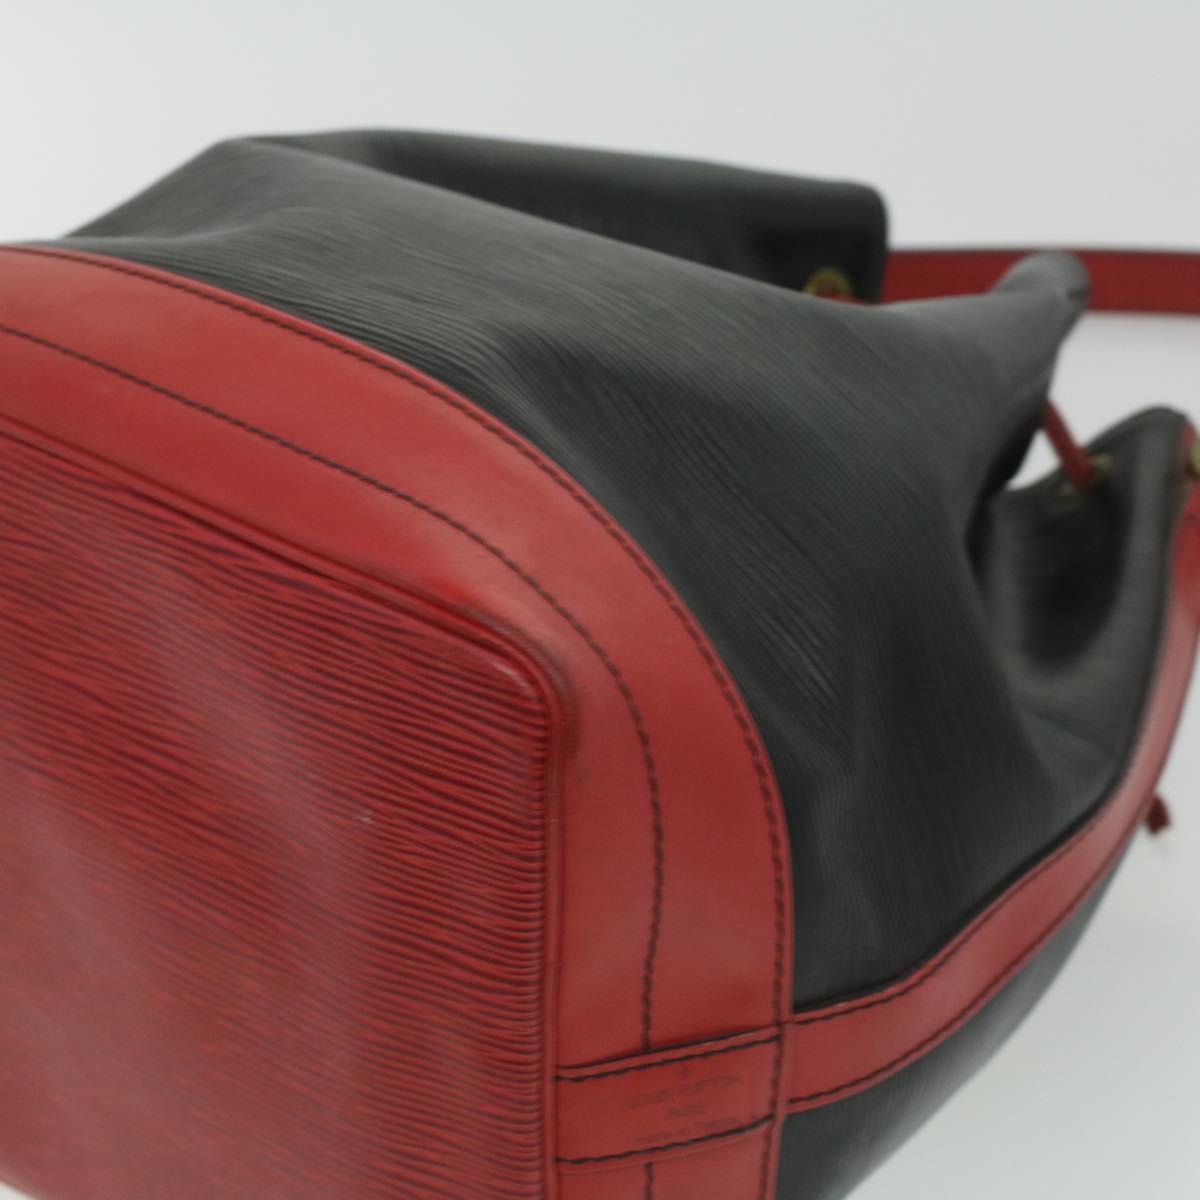 LOUIS VUITTON Epi By color Noe Shoulder Bag Black Red M44017 LV Auth 33205